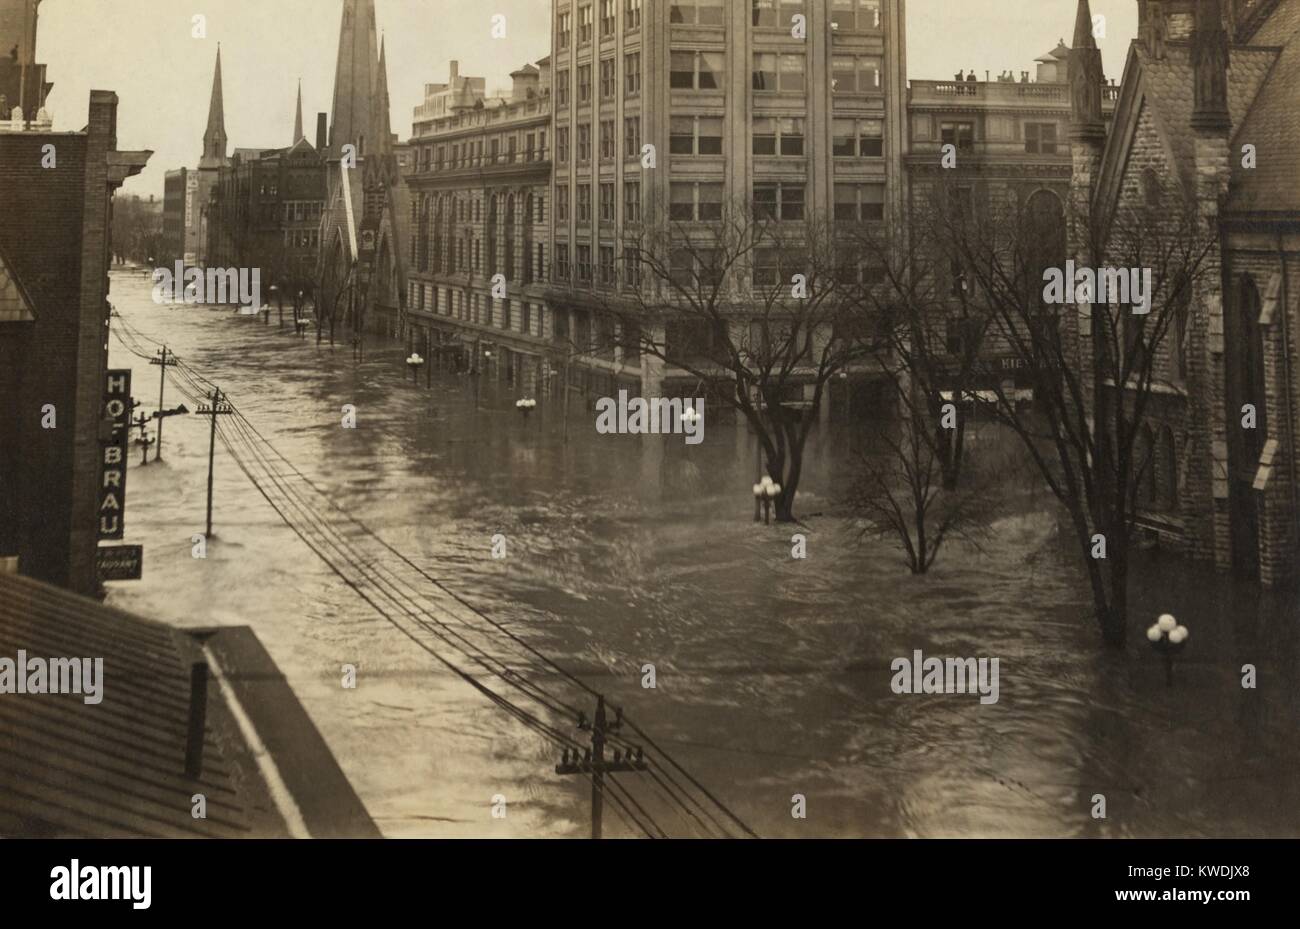 Ludlow Street in der Innenstadt von Dayton, Ohio, Blick nach Norden während der großen Flut von 1913. Dayton war völlig verwüstet, für drei Tage Ende März in überflutet wurde Ohios größte Wetter Katastrophe des frühen 20. Jahrhunderts (BSLOC 2017 17 96) Stockfoto